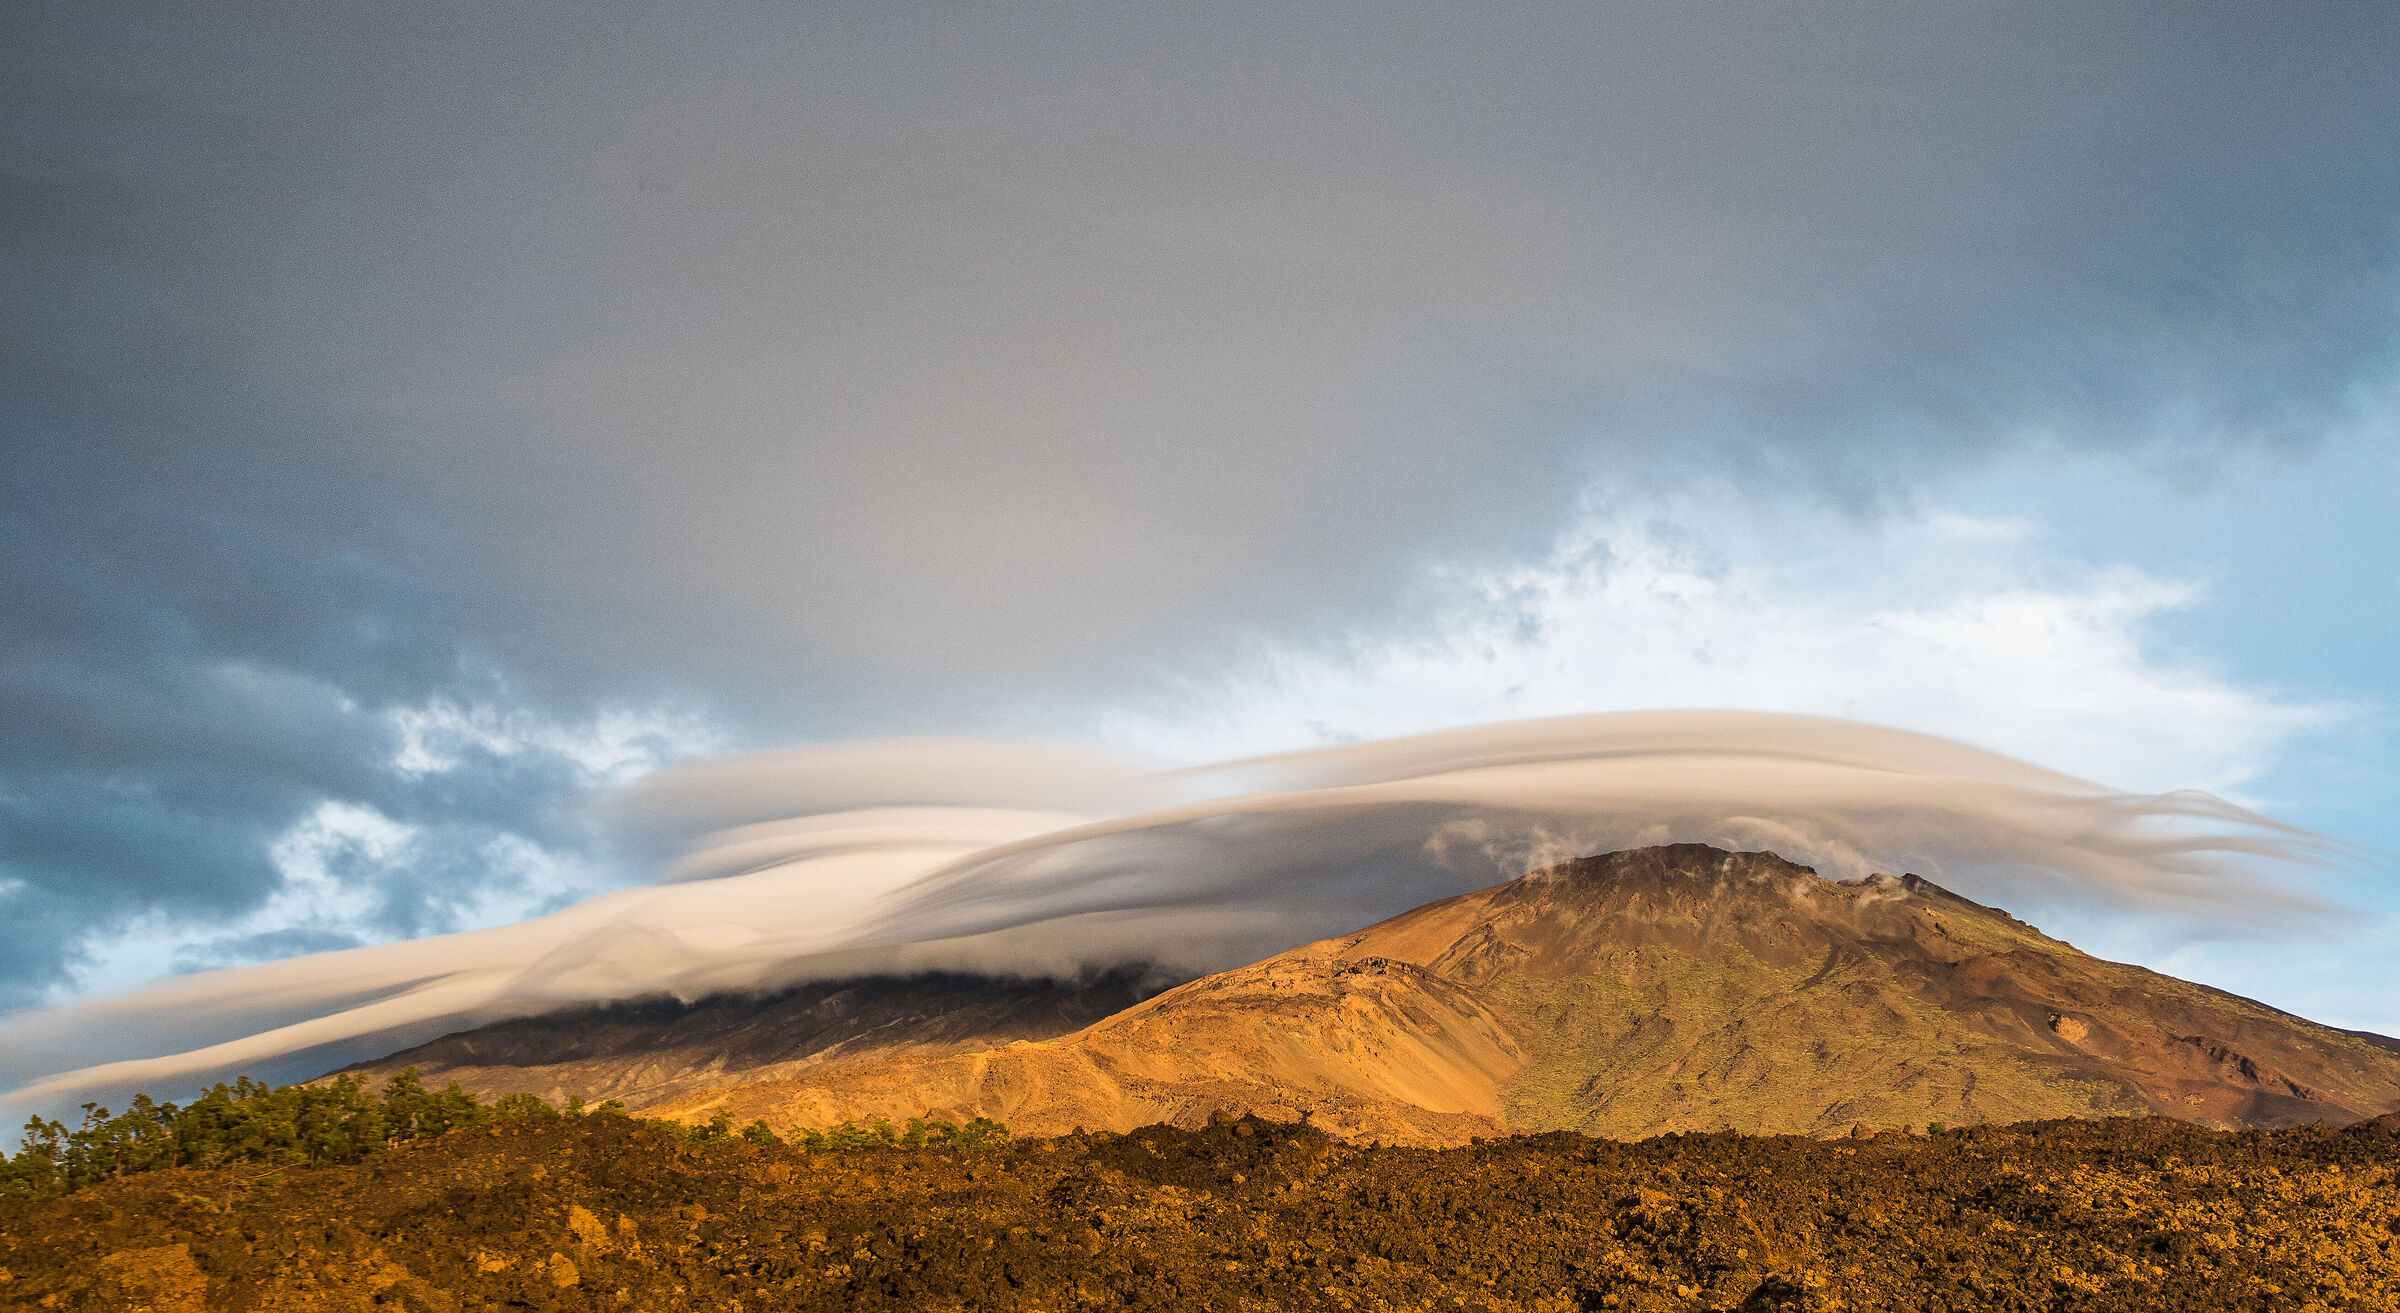 nuvole di lenticualr sul Teide...